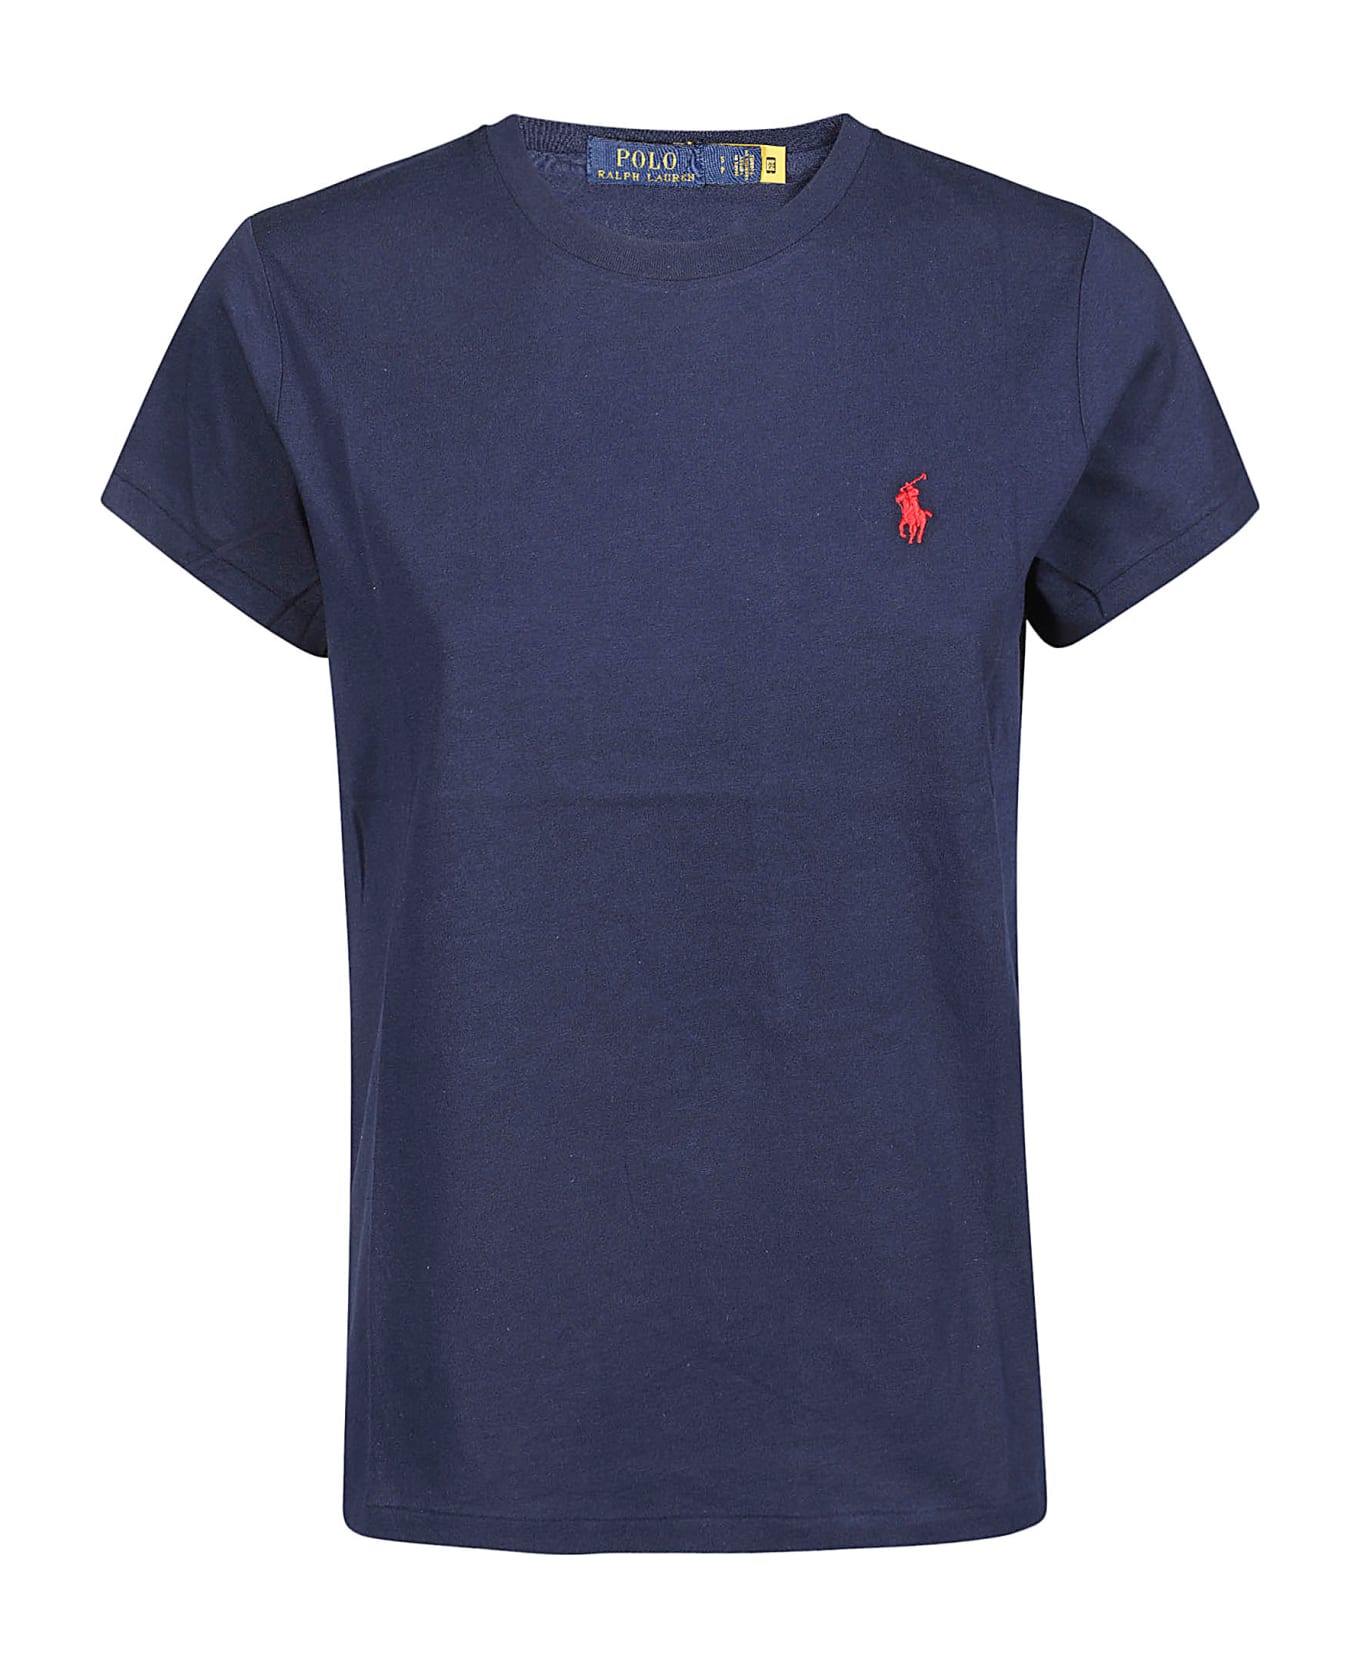 Polo Ralph Lauren New T-shirt - Cruise Navy Tシャツ